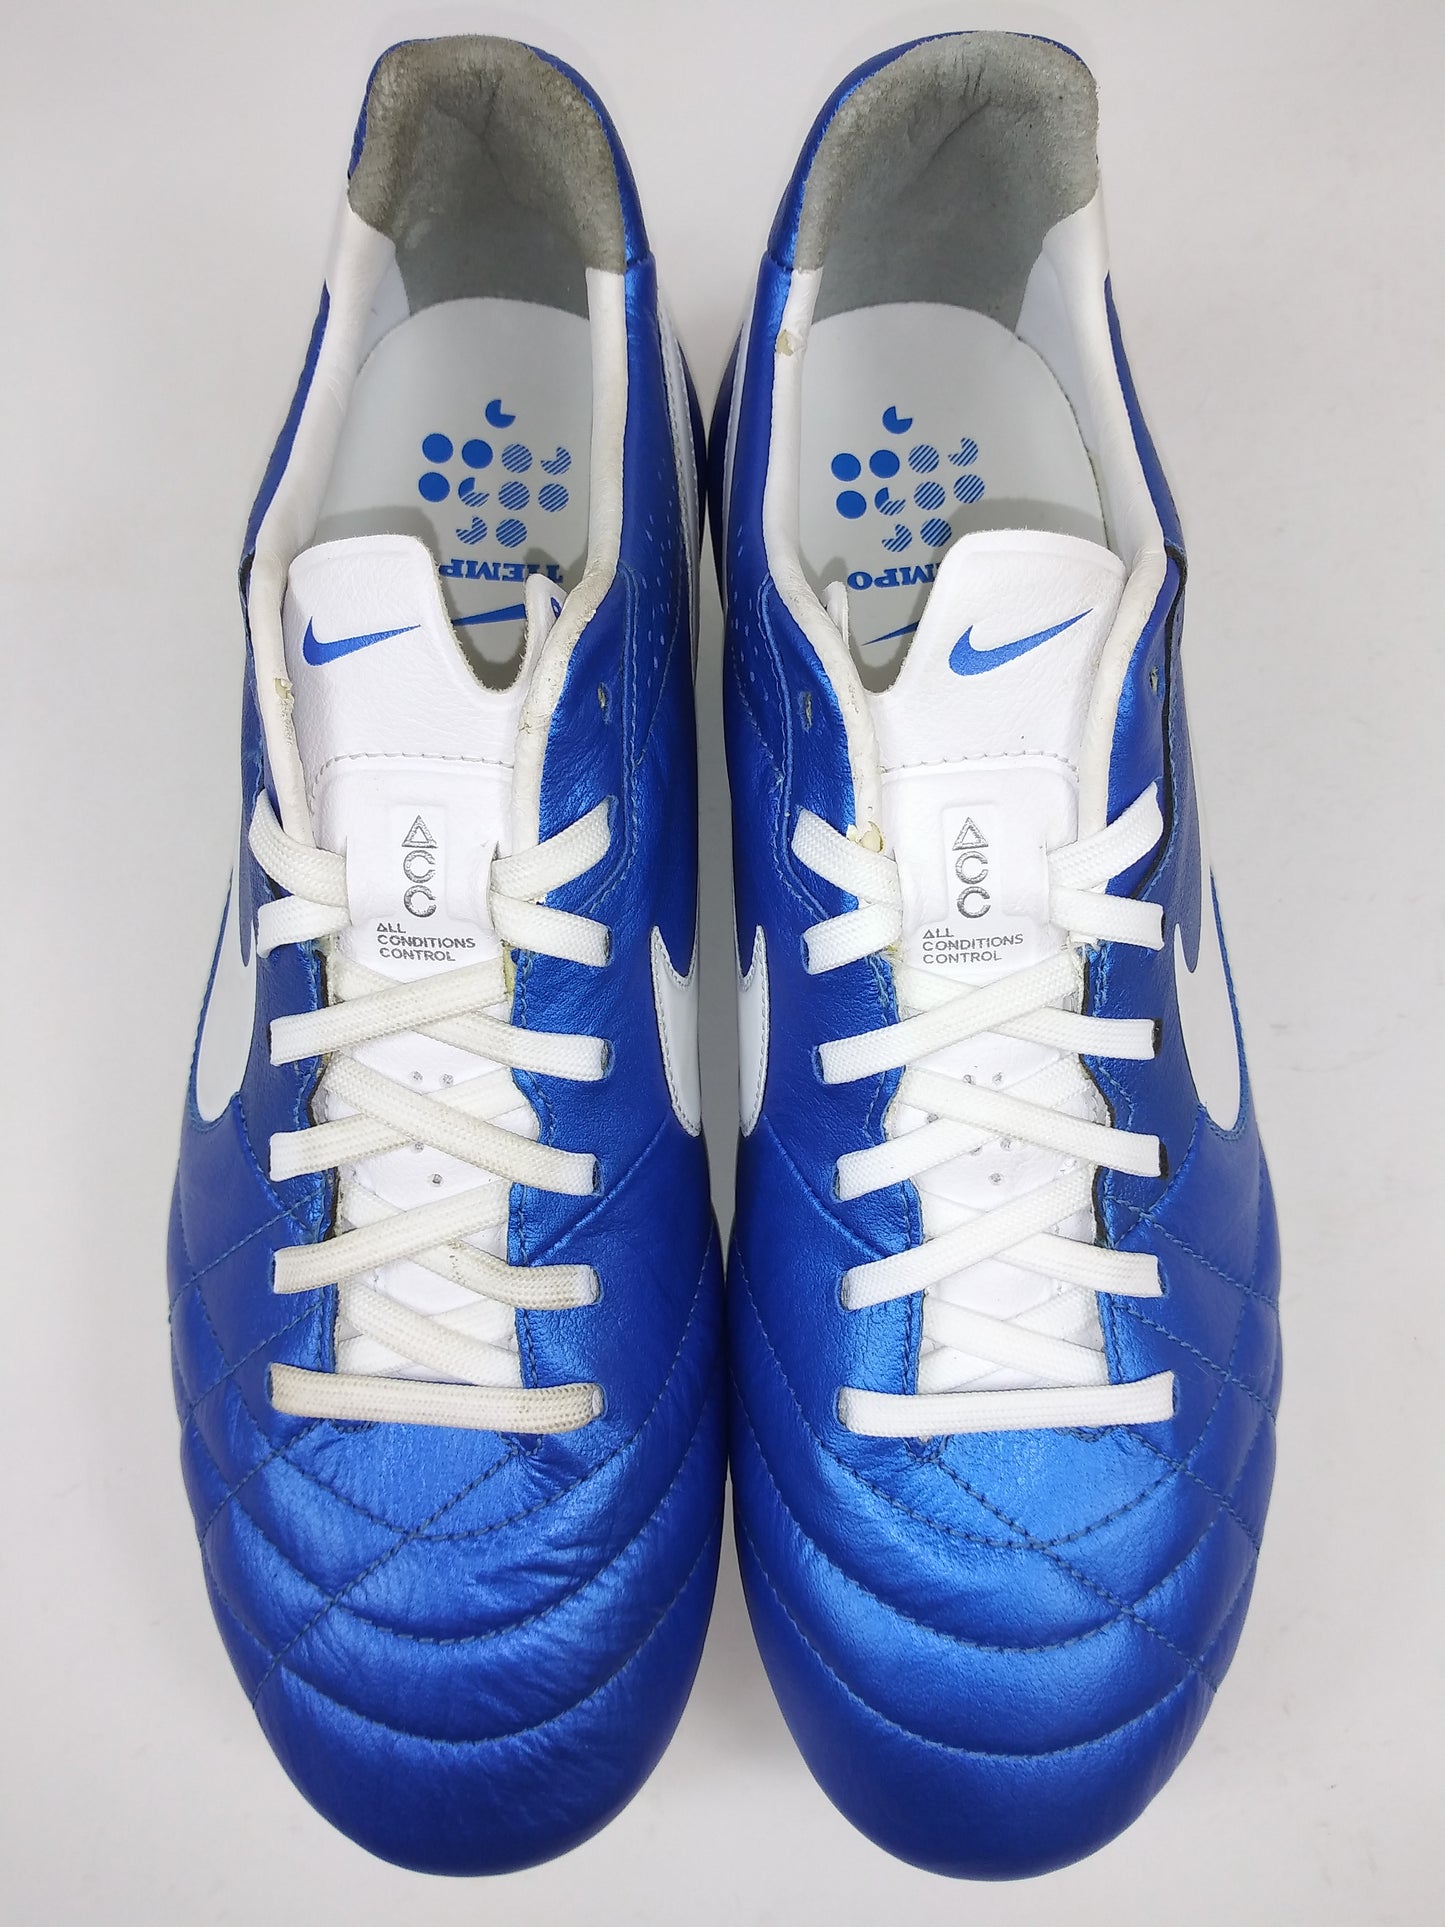 Nike Tiempo Legend IV SG-Pro Blue White